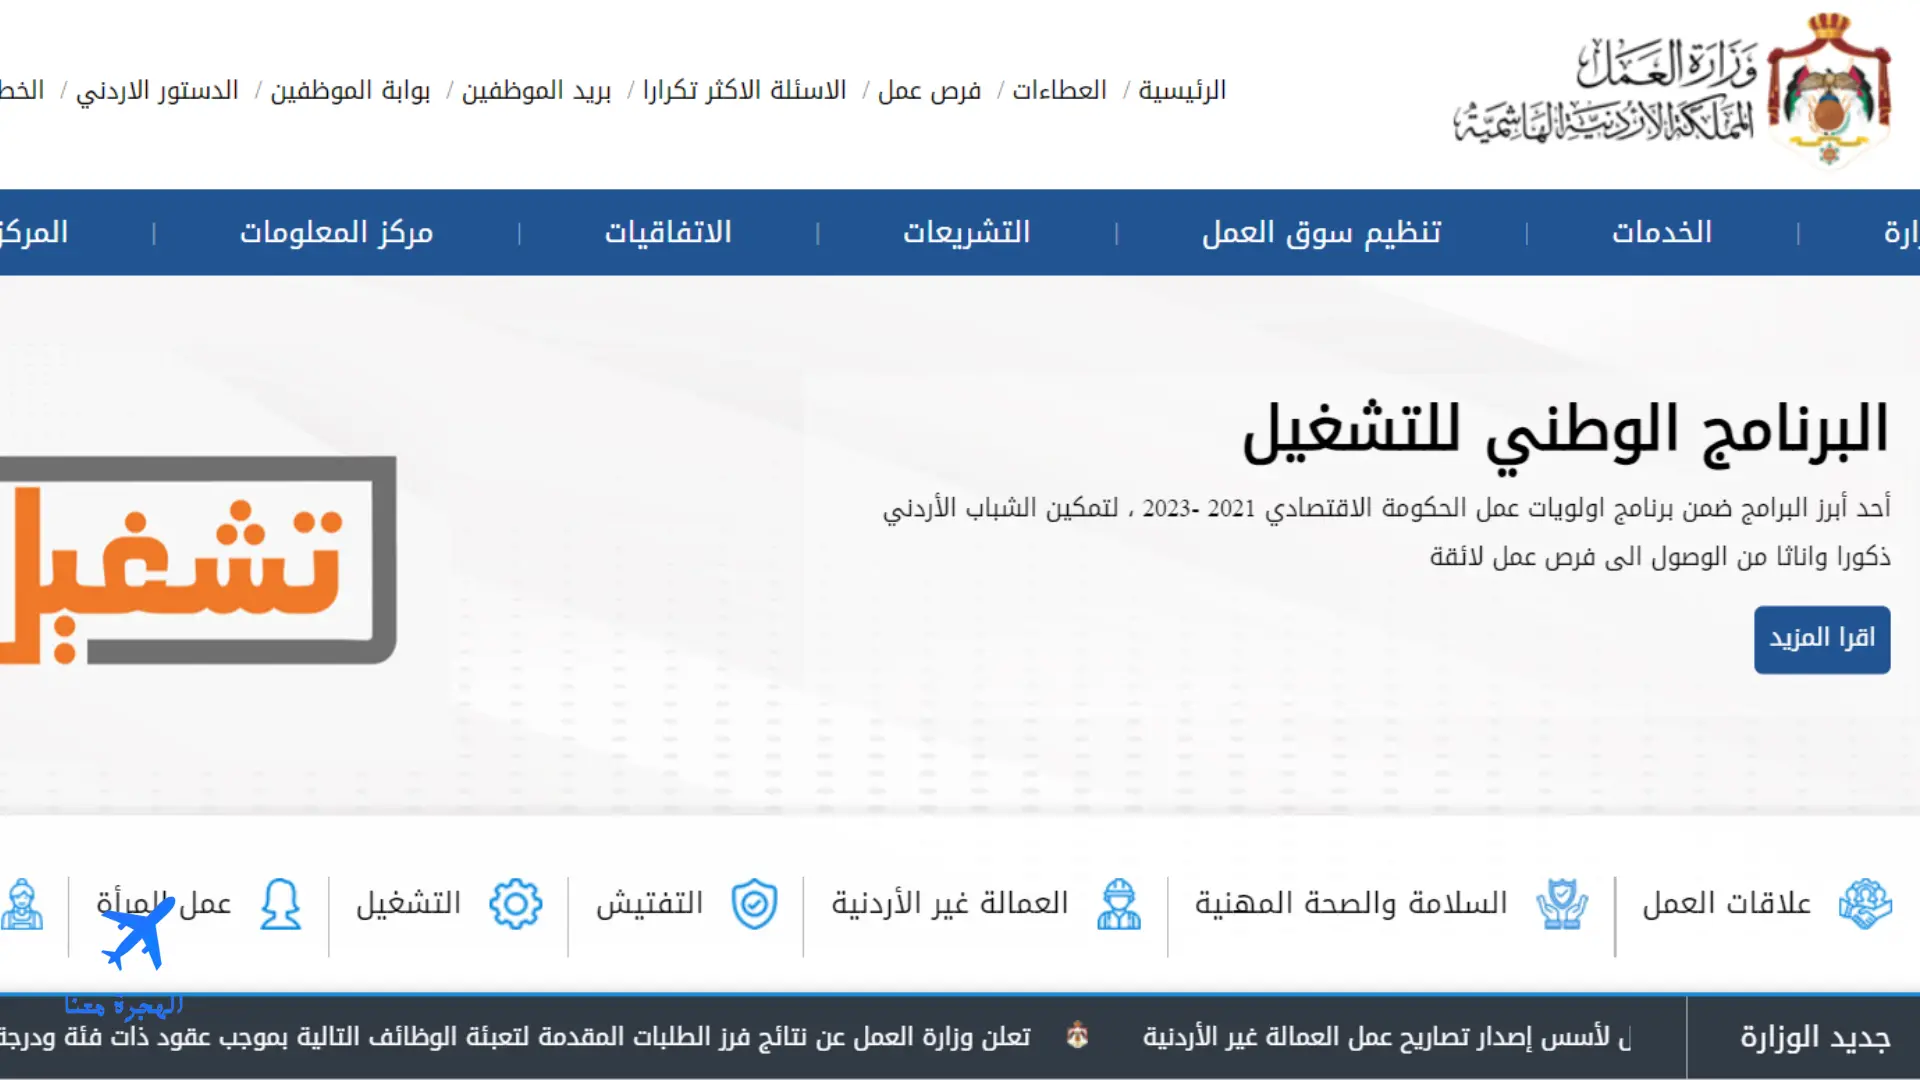 صورة من الموقع الذي يتيح الاستعلام عن تصريح العمل بالرقم الشخصي في الأردن